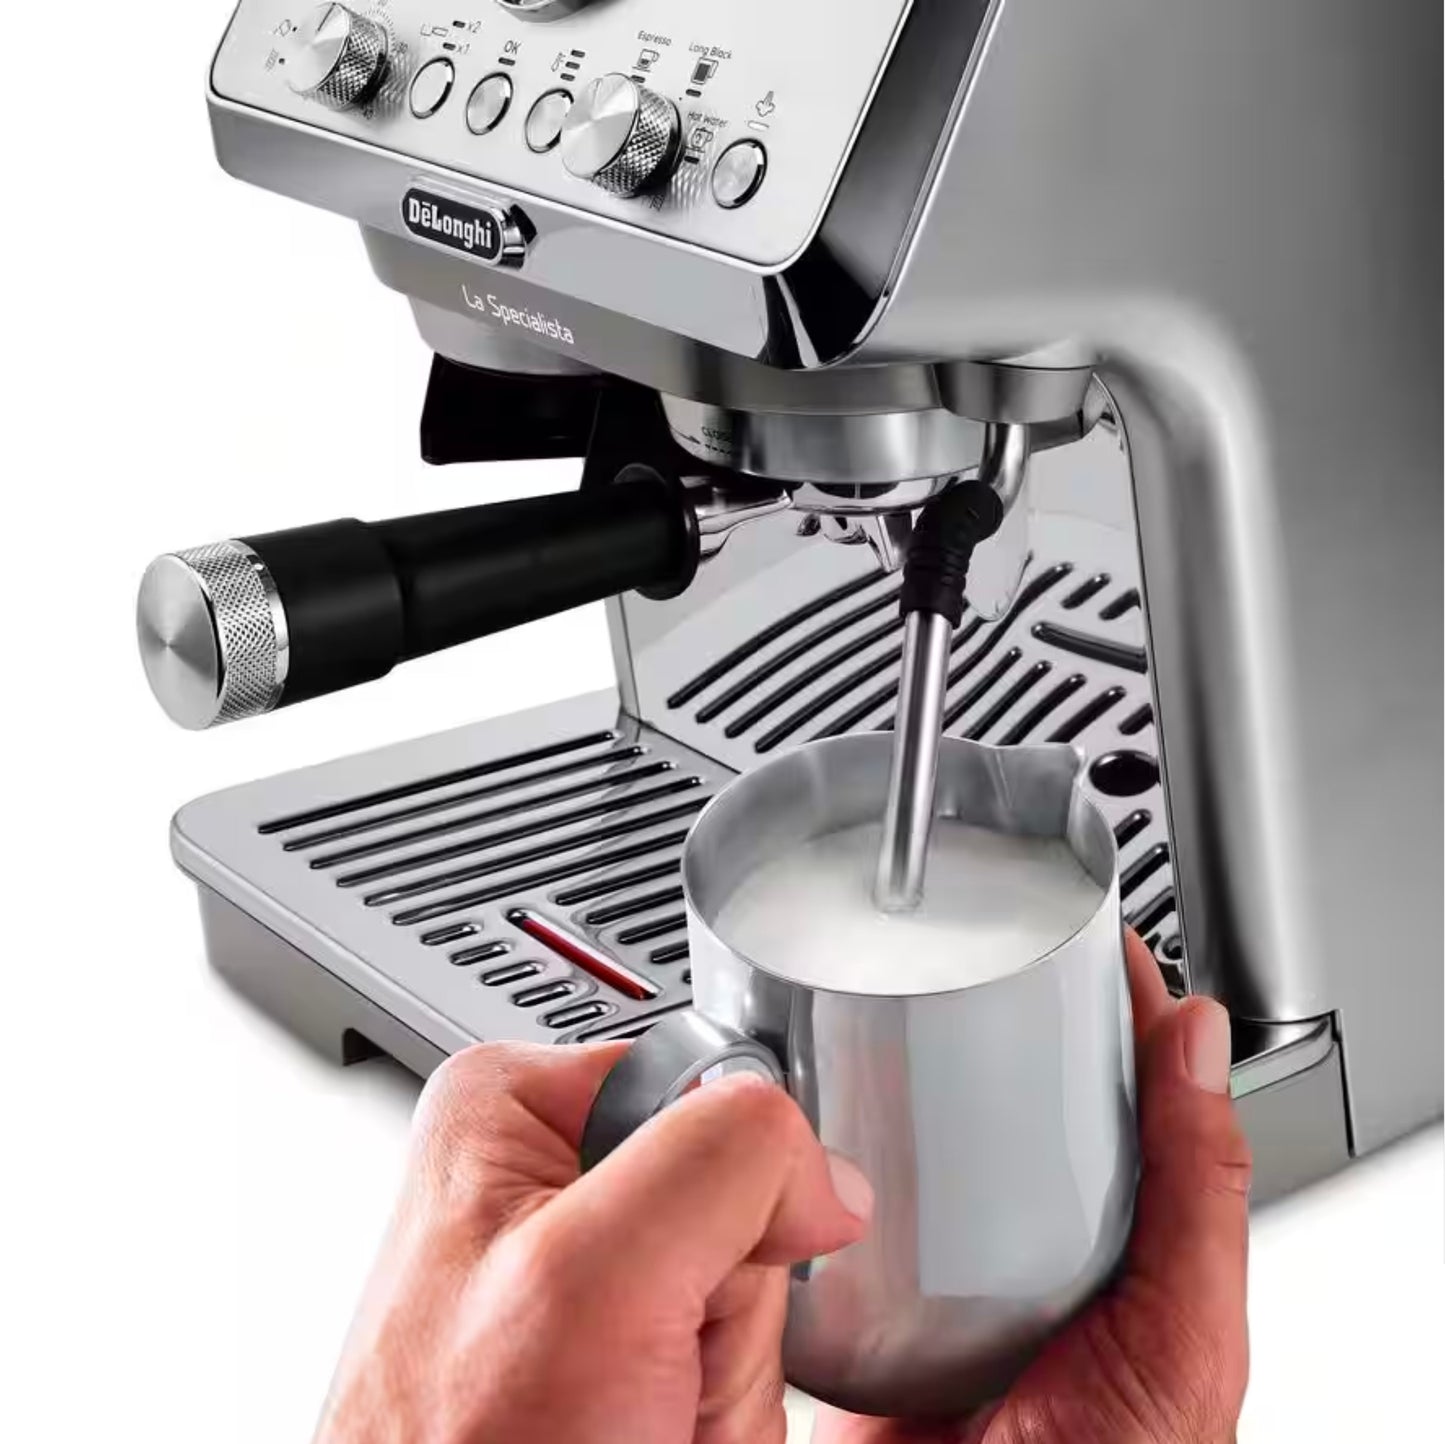 De'Longhi La Specialista Arte Evo Semi-Automatic Espresso Machine with Cold Brew (Metal) - EC9255M